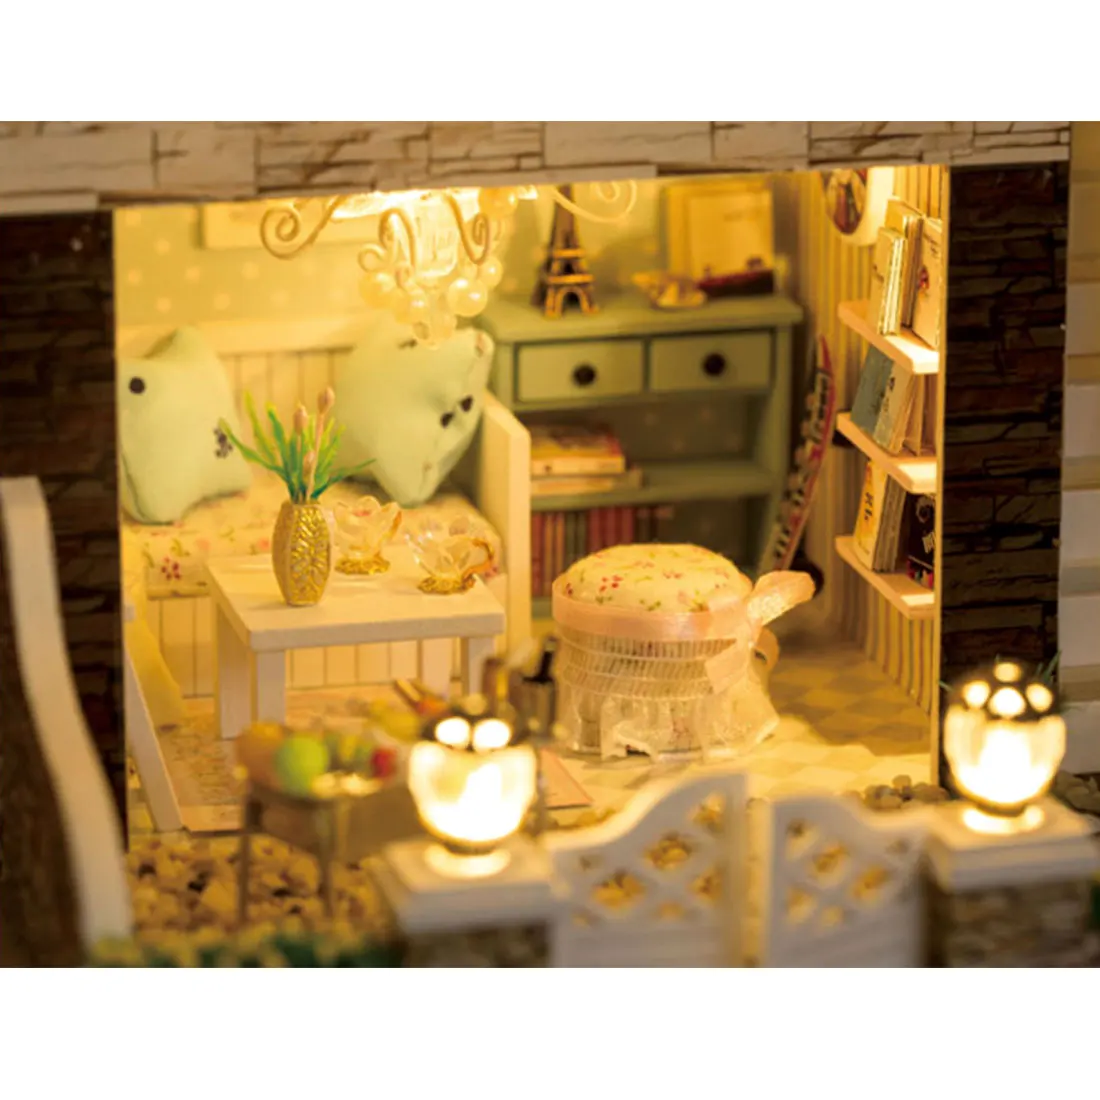 Деревянный Кукольный дом Миниатюрный ручной работы Сборка модель дома игрушка со светом и музыкой подарки на день рождения рождественские украшения